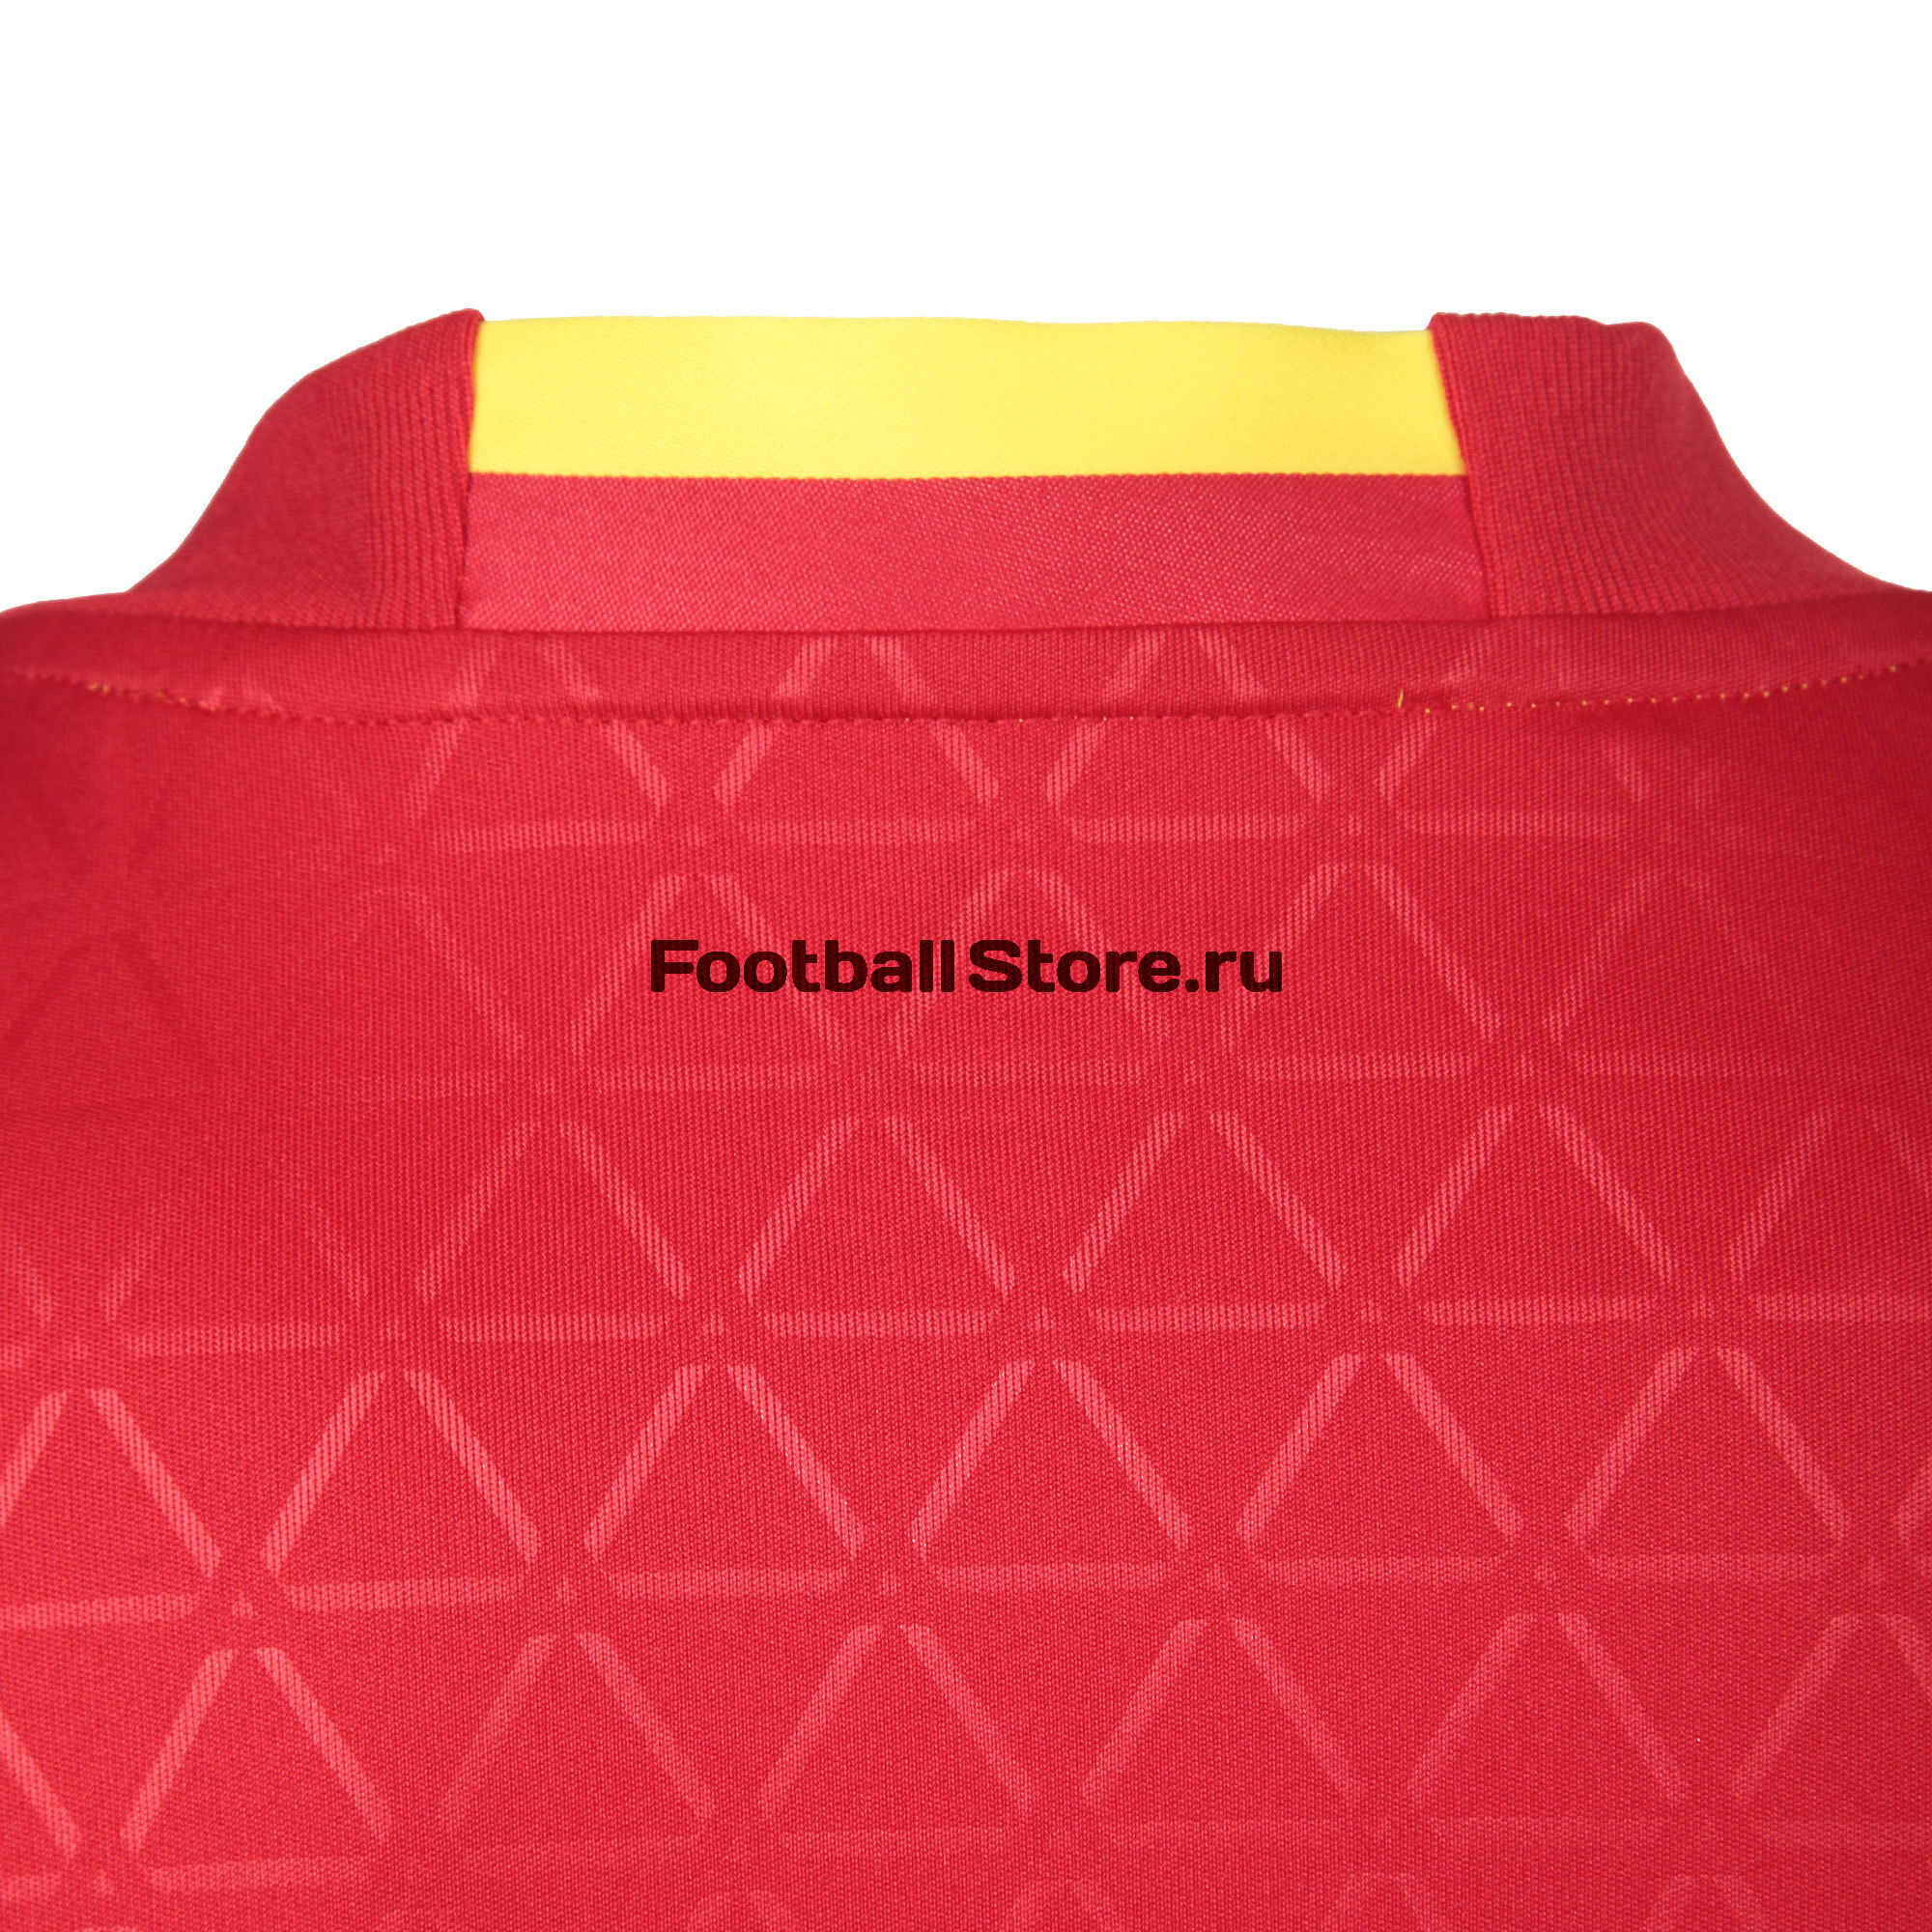 Футболка подростковая Adidas Spain Home AA0850 – купить интернет магазине footballstore, цена, фото